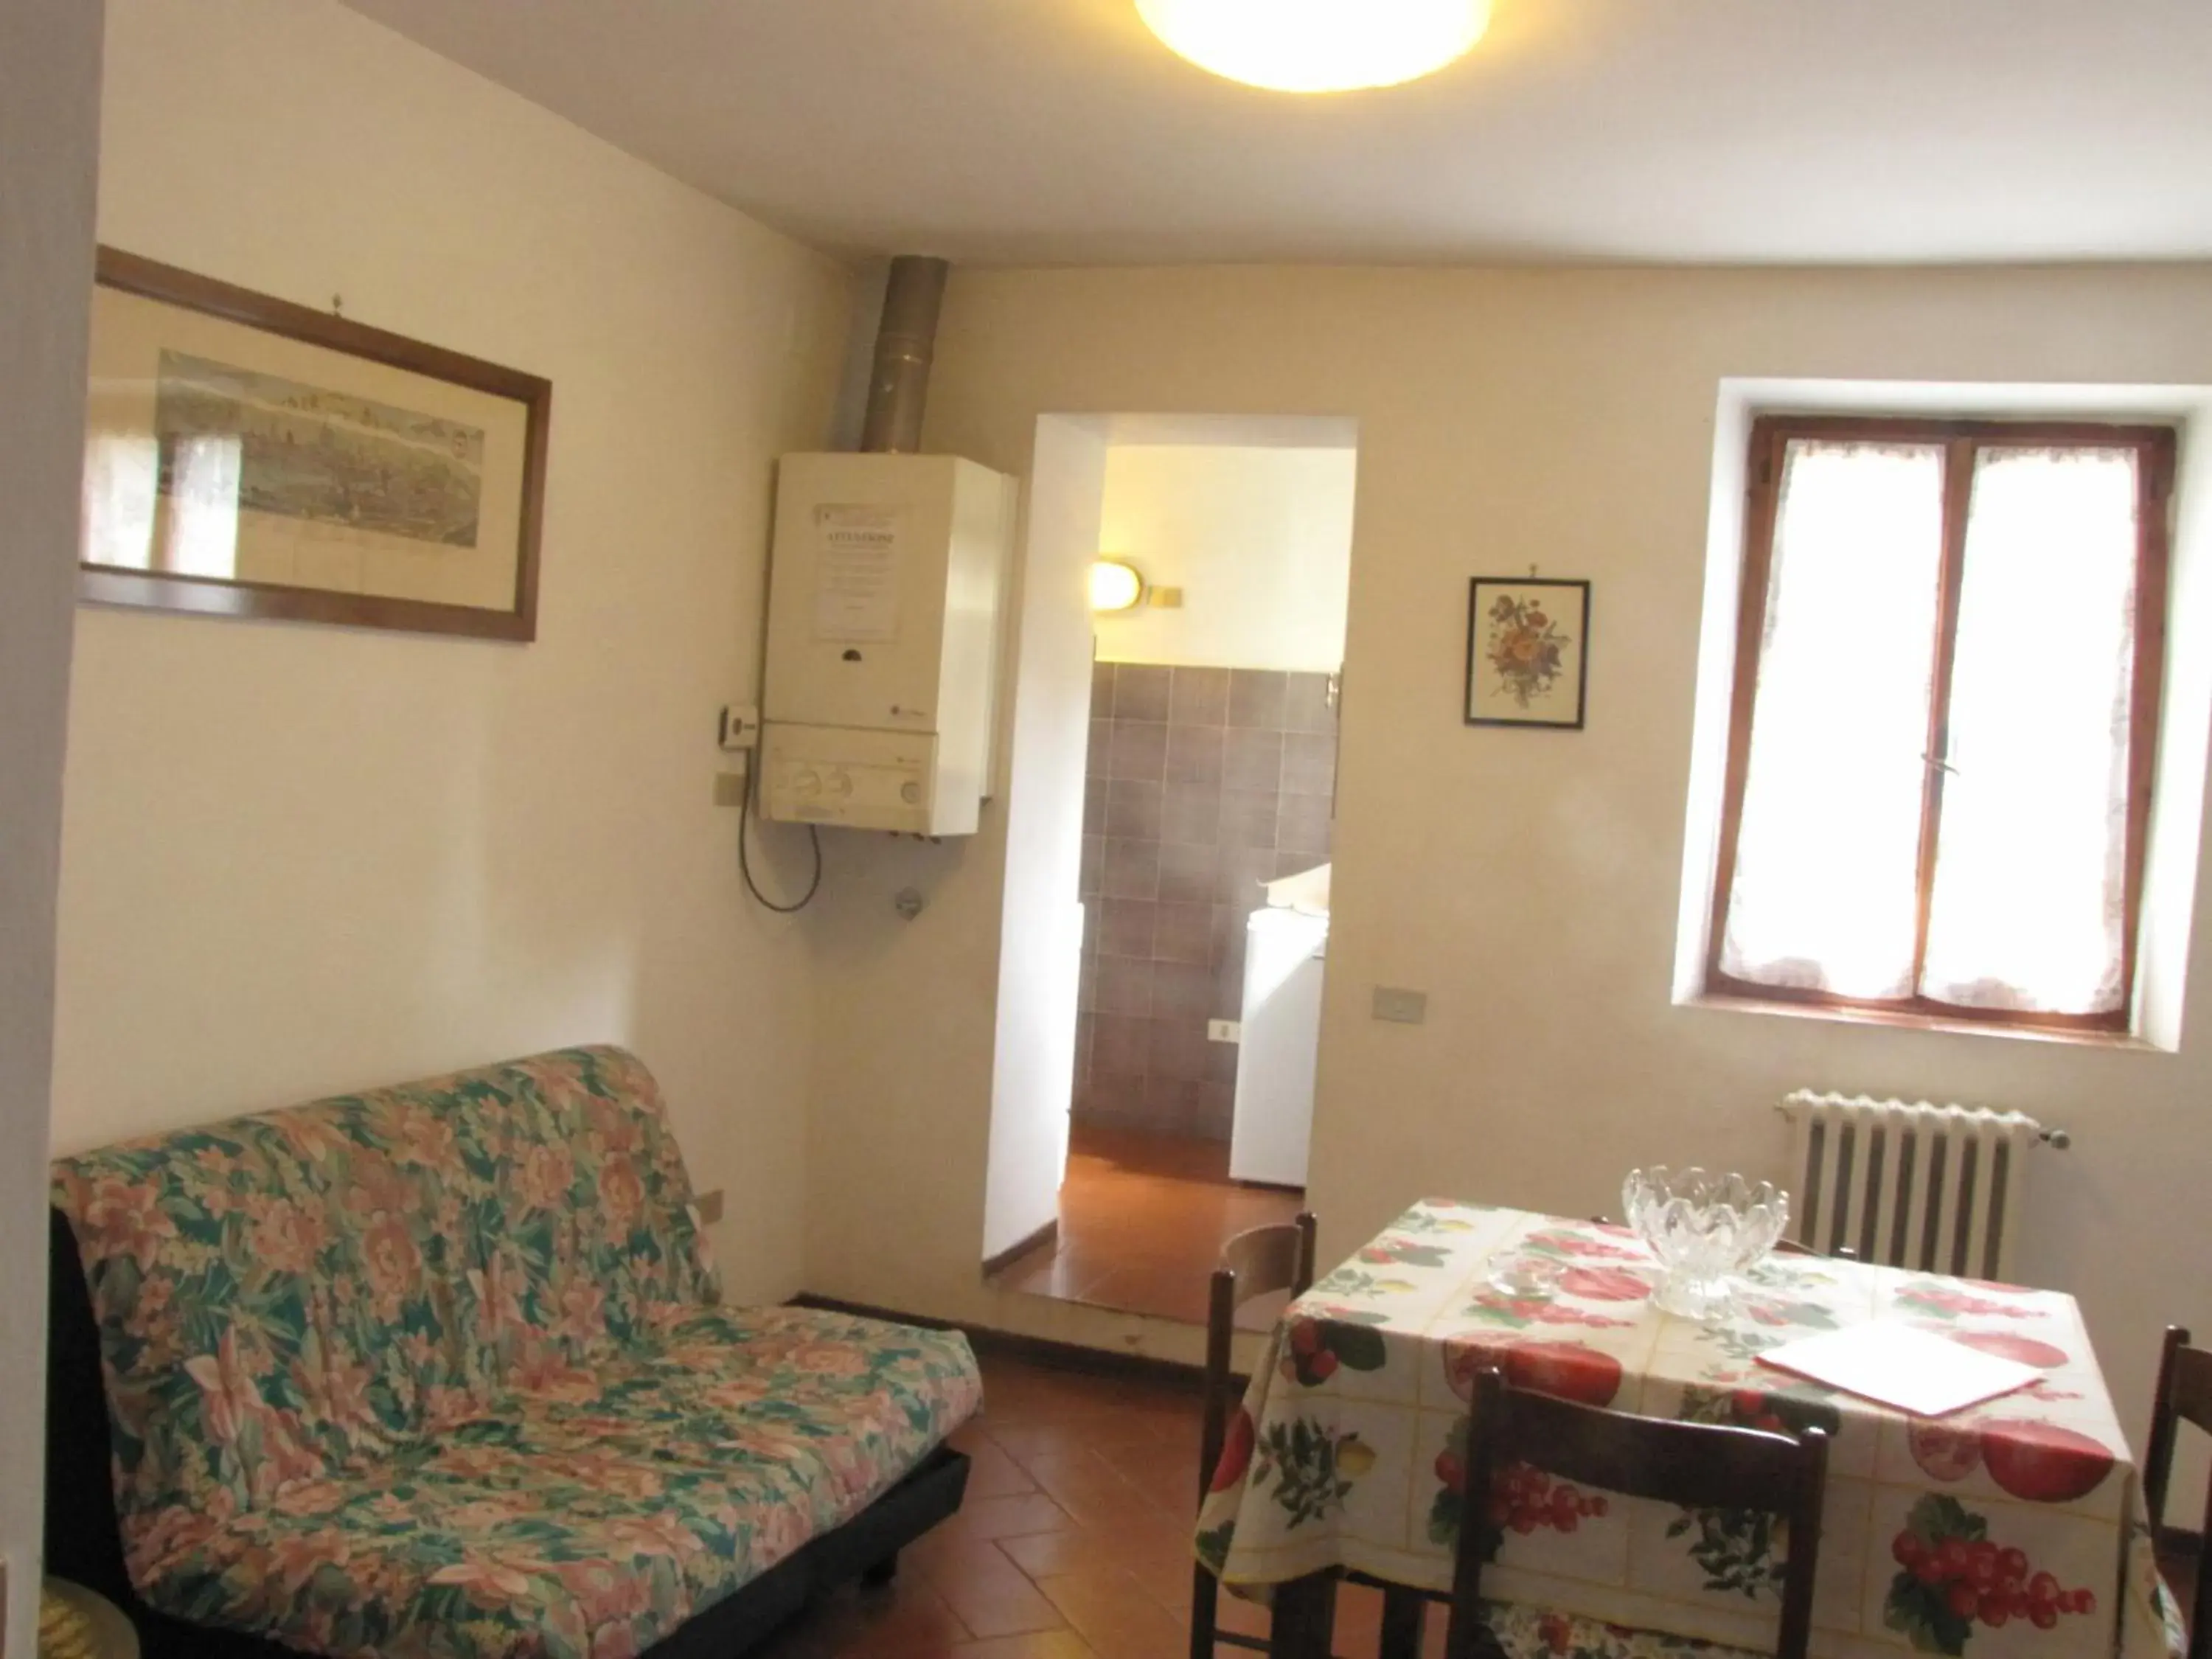 Bedroom, Seating Area in Residence Casprini da Omero